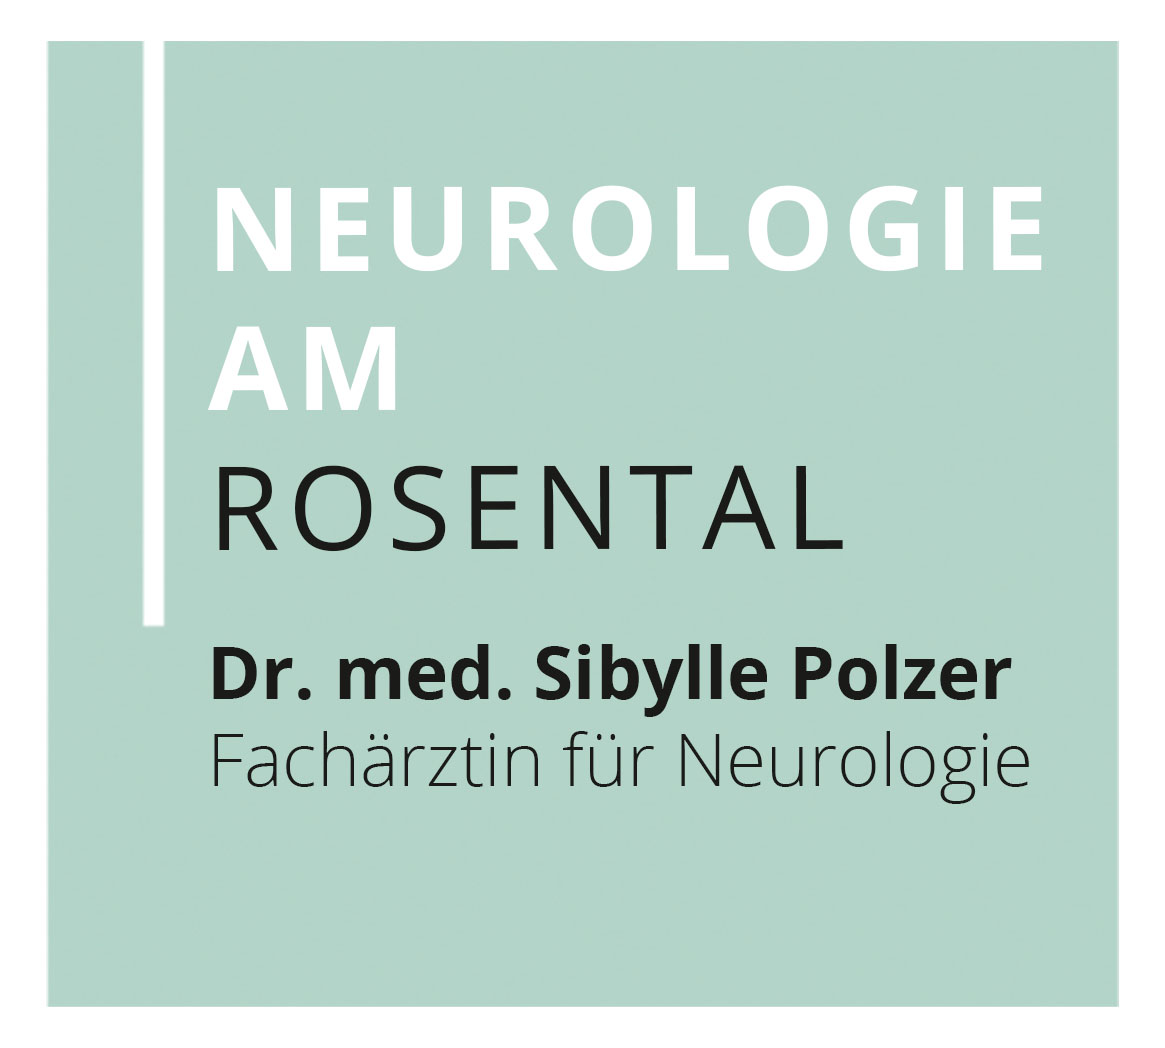 Neurologie am Rosental - Dr. med. Sibylle Polzer